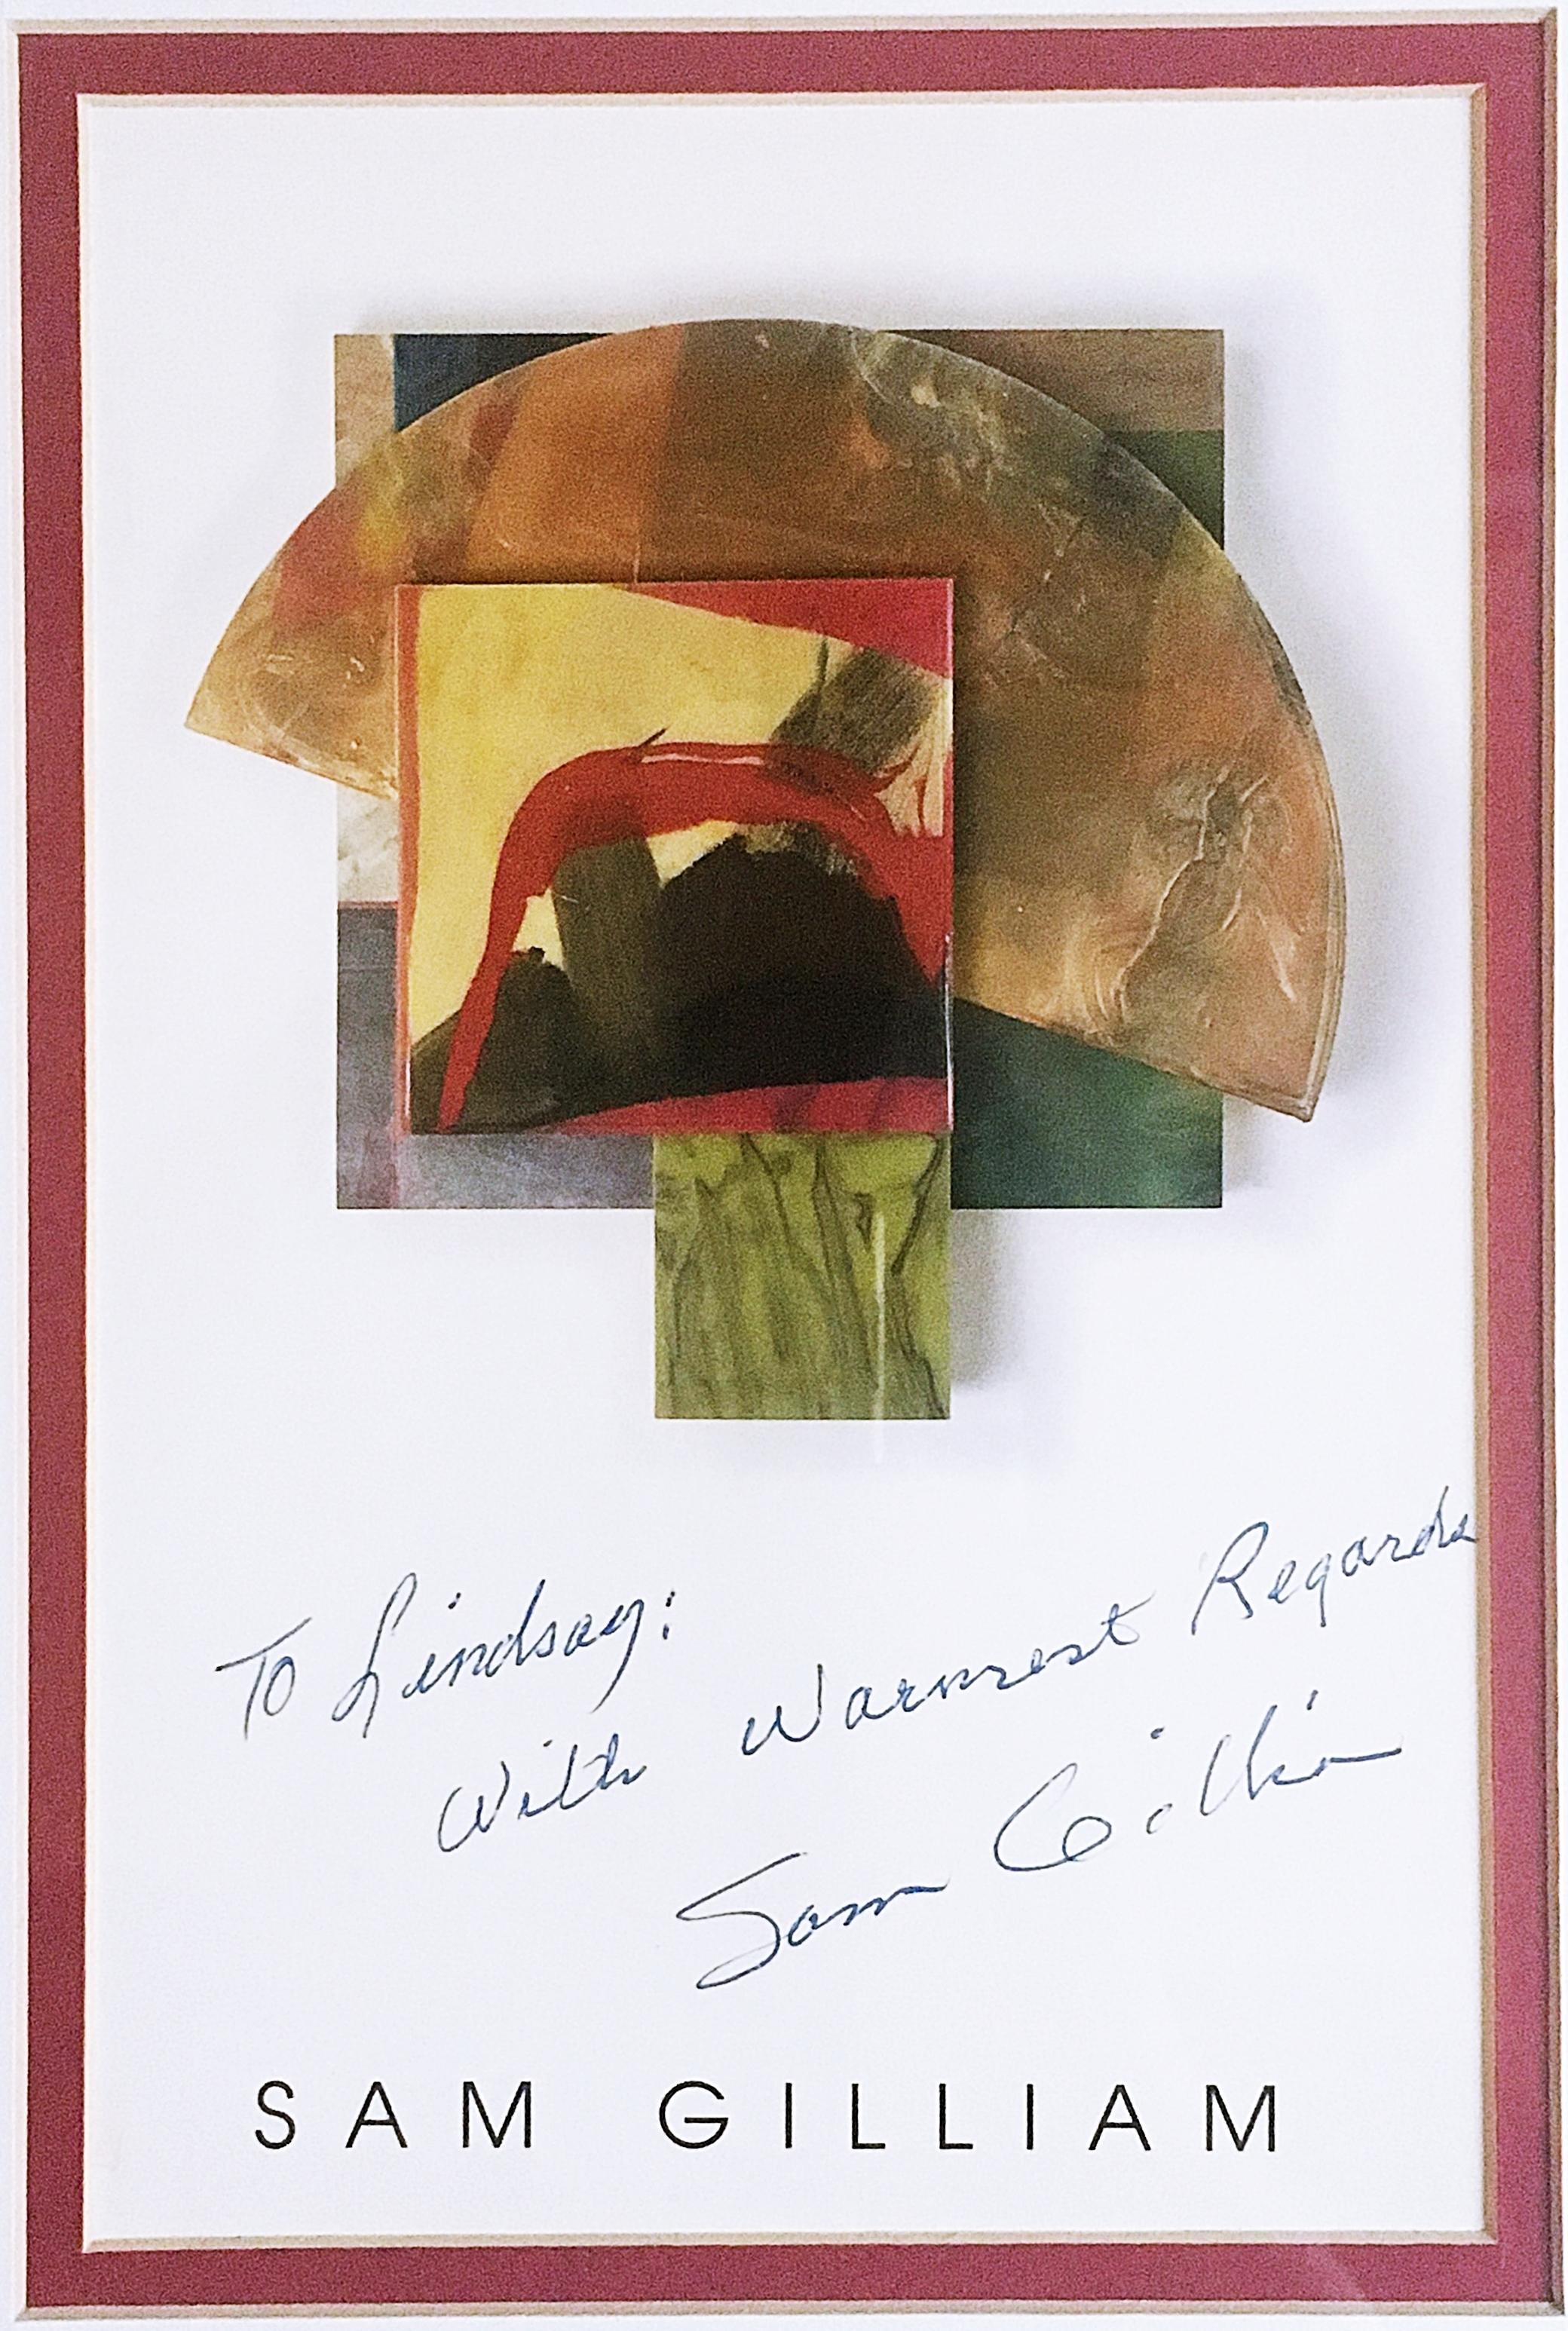 Sam Gilliam
Lithographie offset avec une inscription chaleureuse à un éducateur artistique afro-américain de renom, 1988
Carte lithographique offset
Carte écrite à la main, signée et inscrite avec un message personnel chaleureux de l'artiste.
Cadre